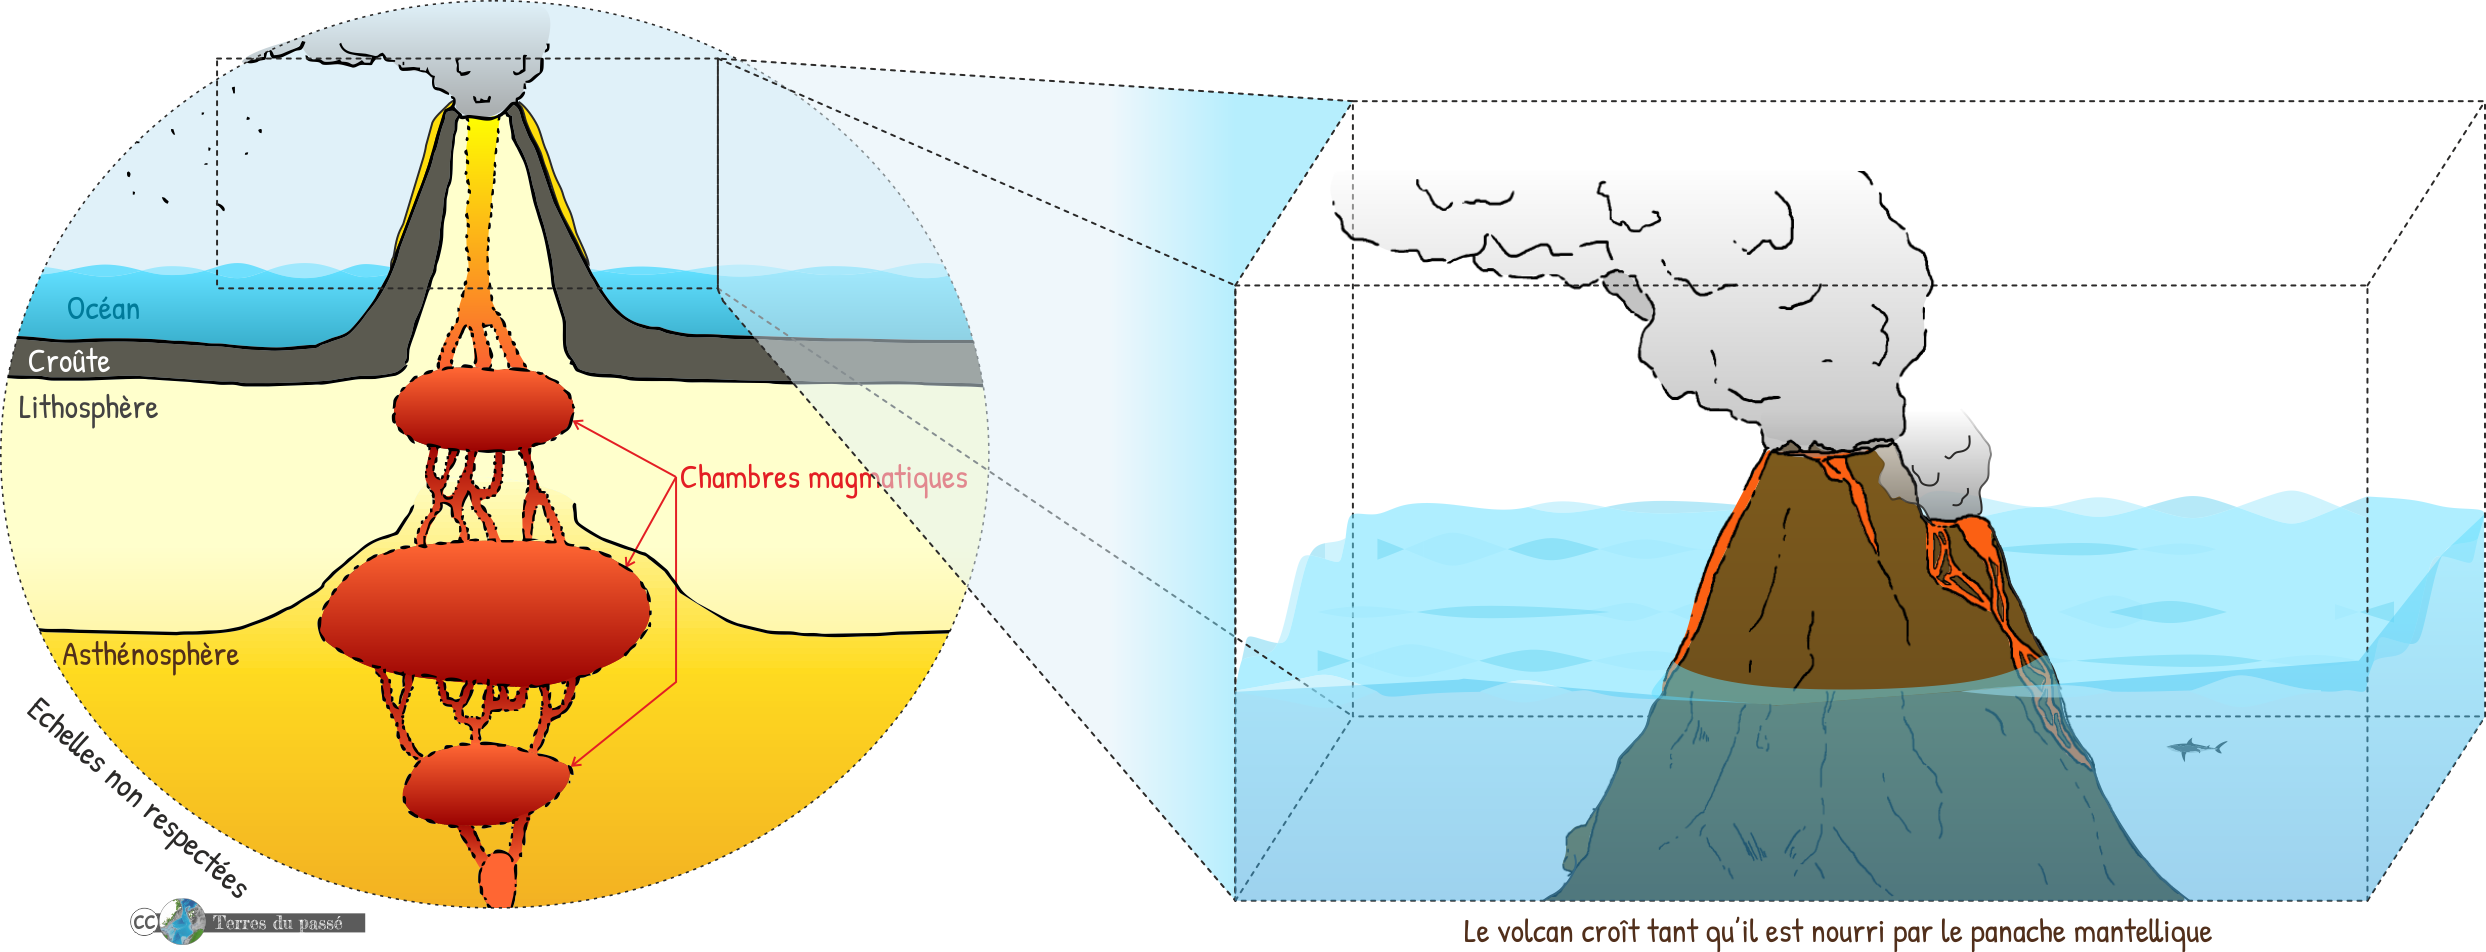 Volcanisme de point chaud, stade 1 : formation d'un volcan qui devient une île lorsque suffisamment de matériel matnellique voire du noyau externe remonte